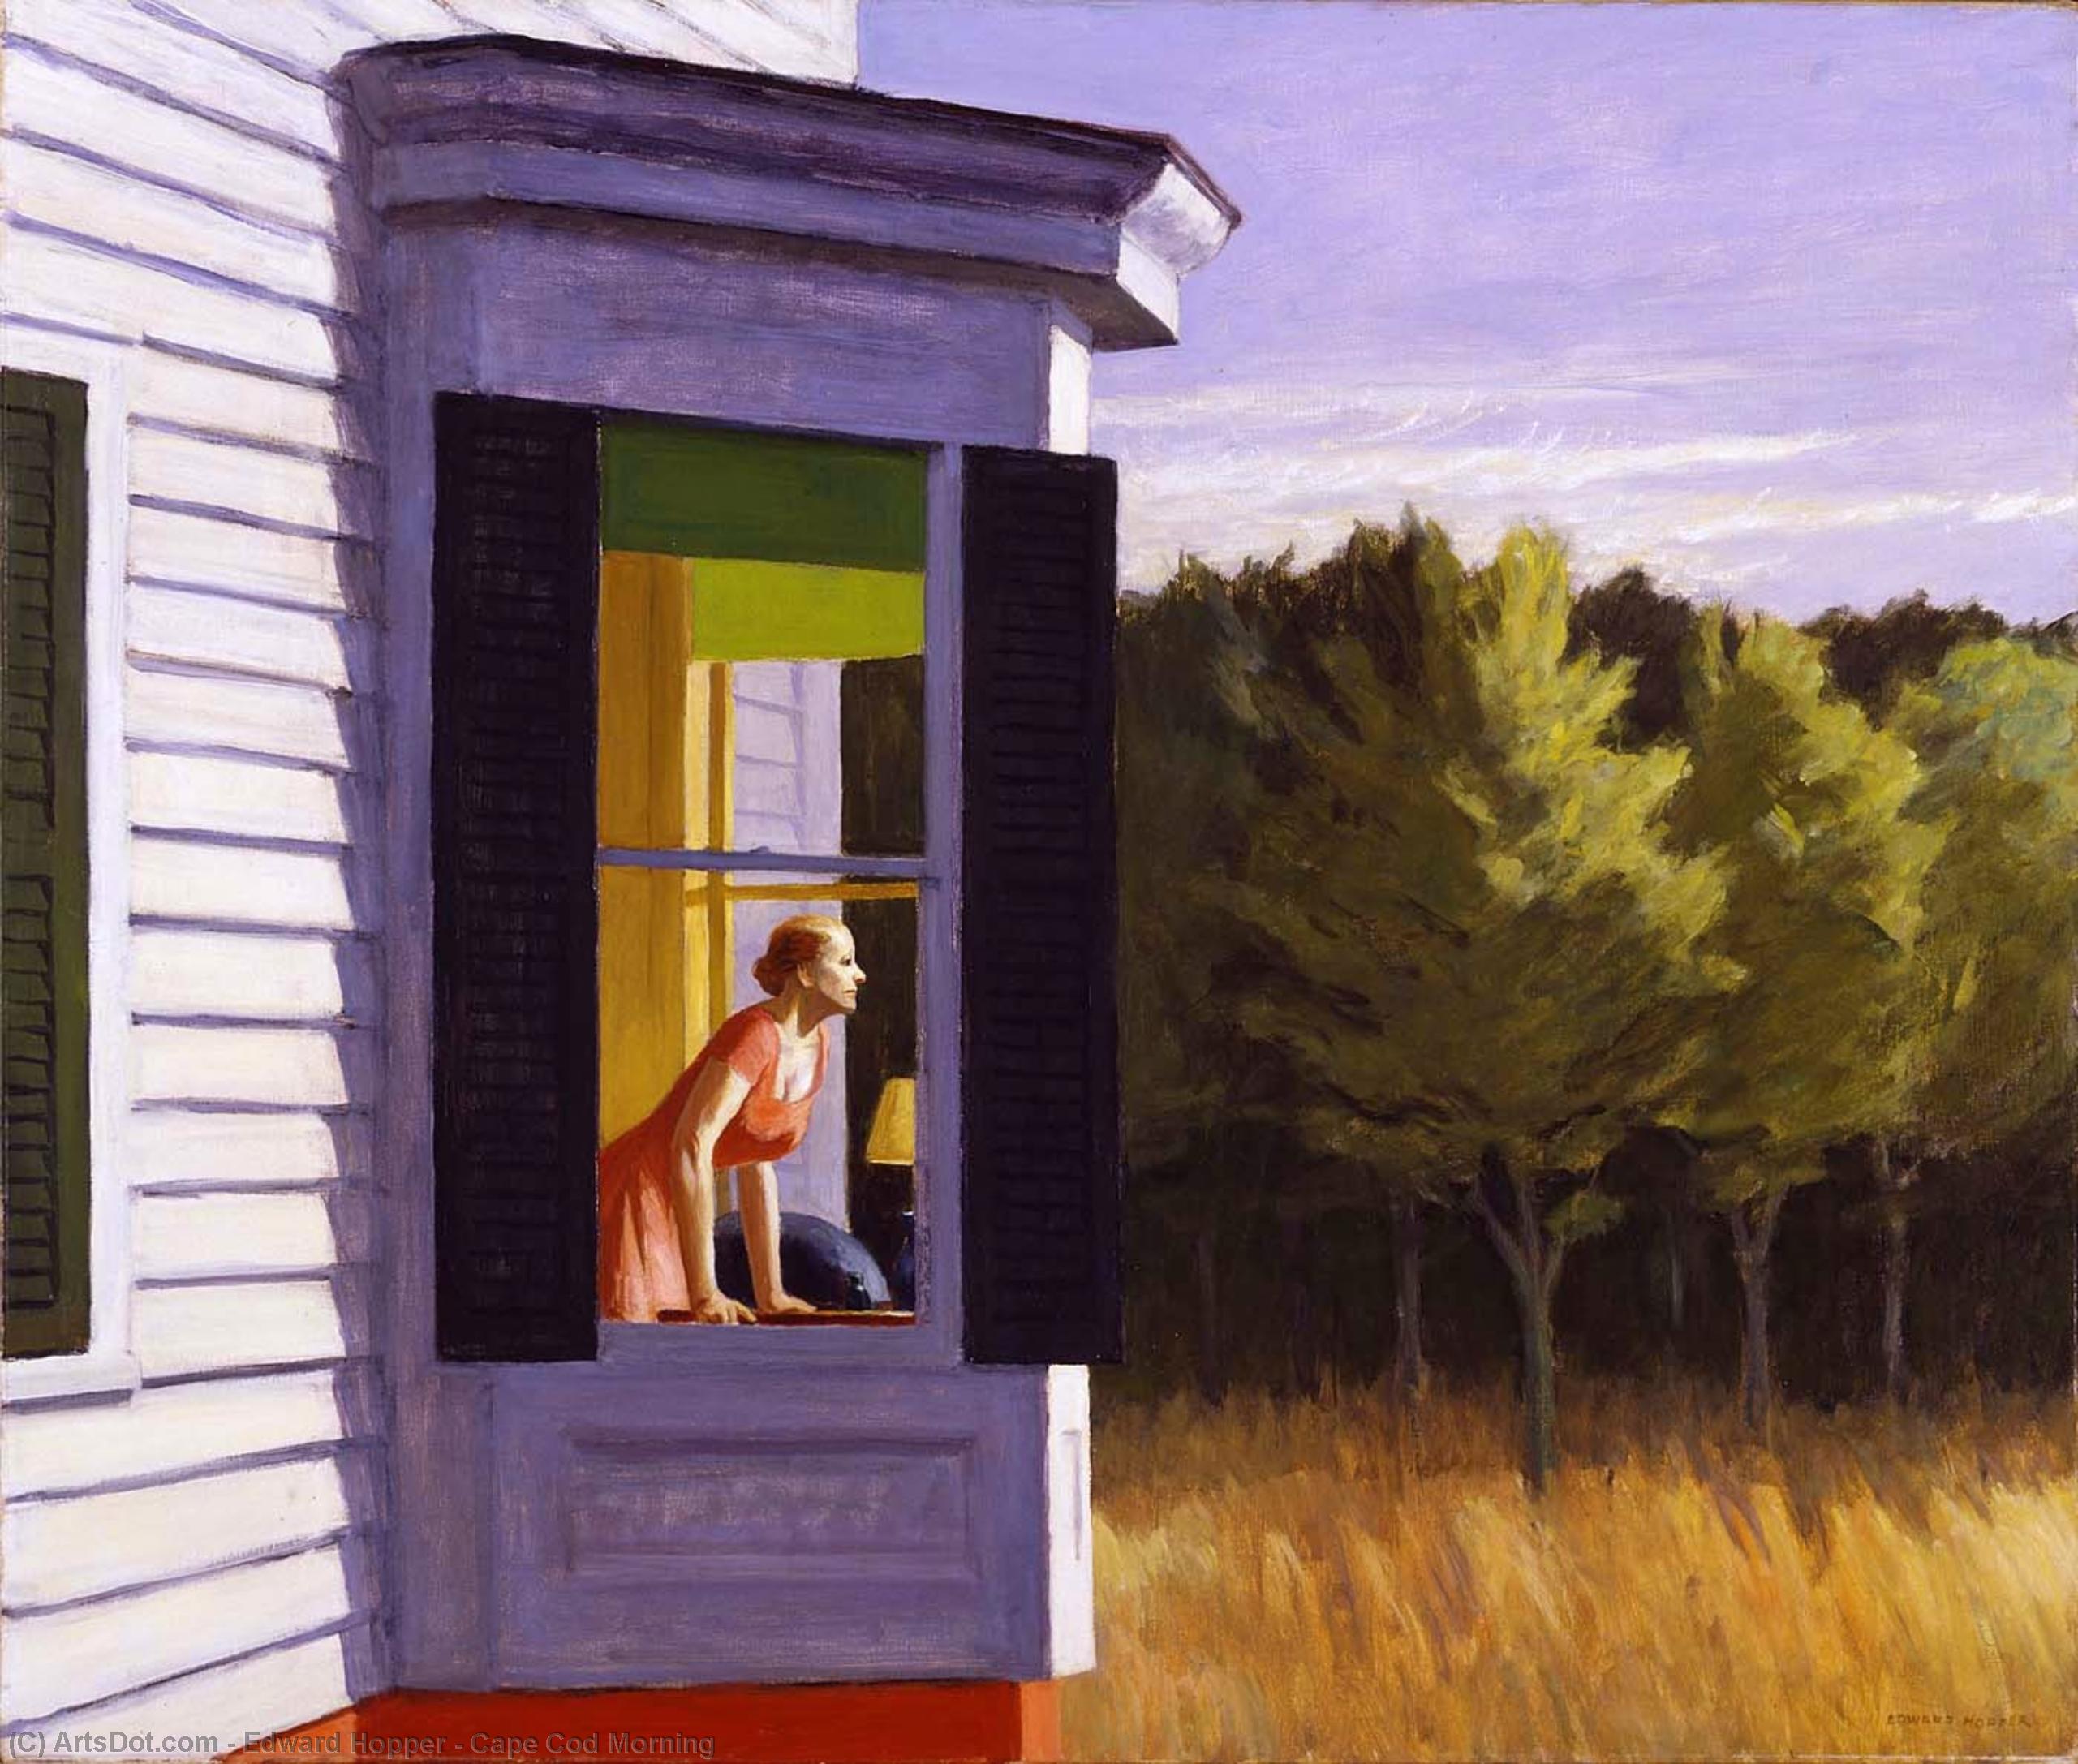 Получить Качественные Печати В Музеях Cape Cod Morning, 1950 по Edward Hopper (Вдохновлен) (1931-1967, United States) | ArtsDot.com